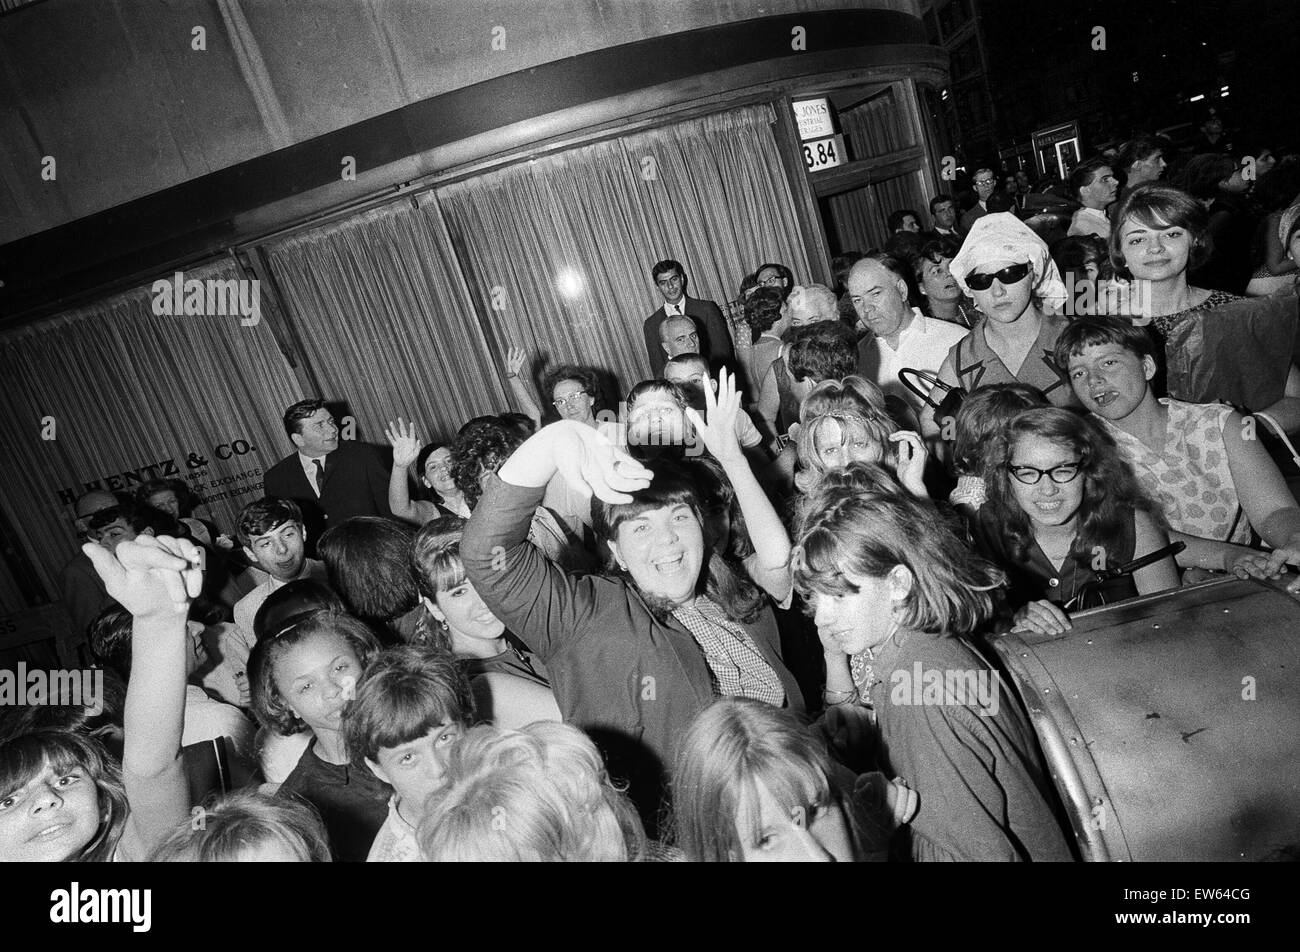 Les Beatles à New York City, sur leur tournée nord-américaine un chef de leur concert qui aura lieu à Forest Hills. (Photo) Fans déchaînée pour les Beatles. 28 août 1964. Banque D'Images